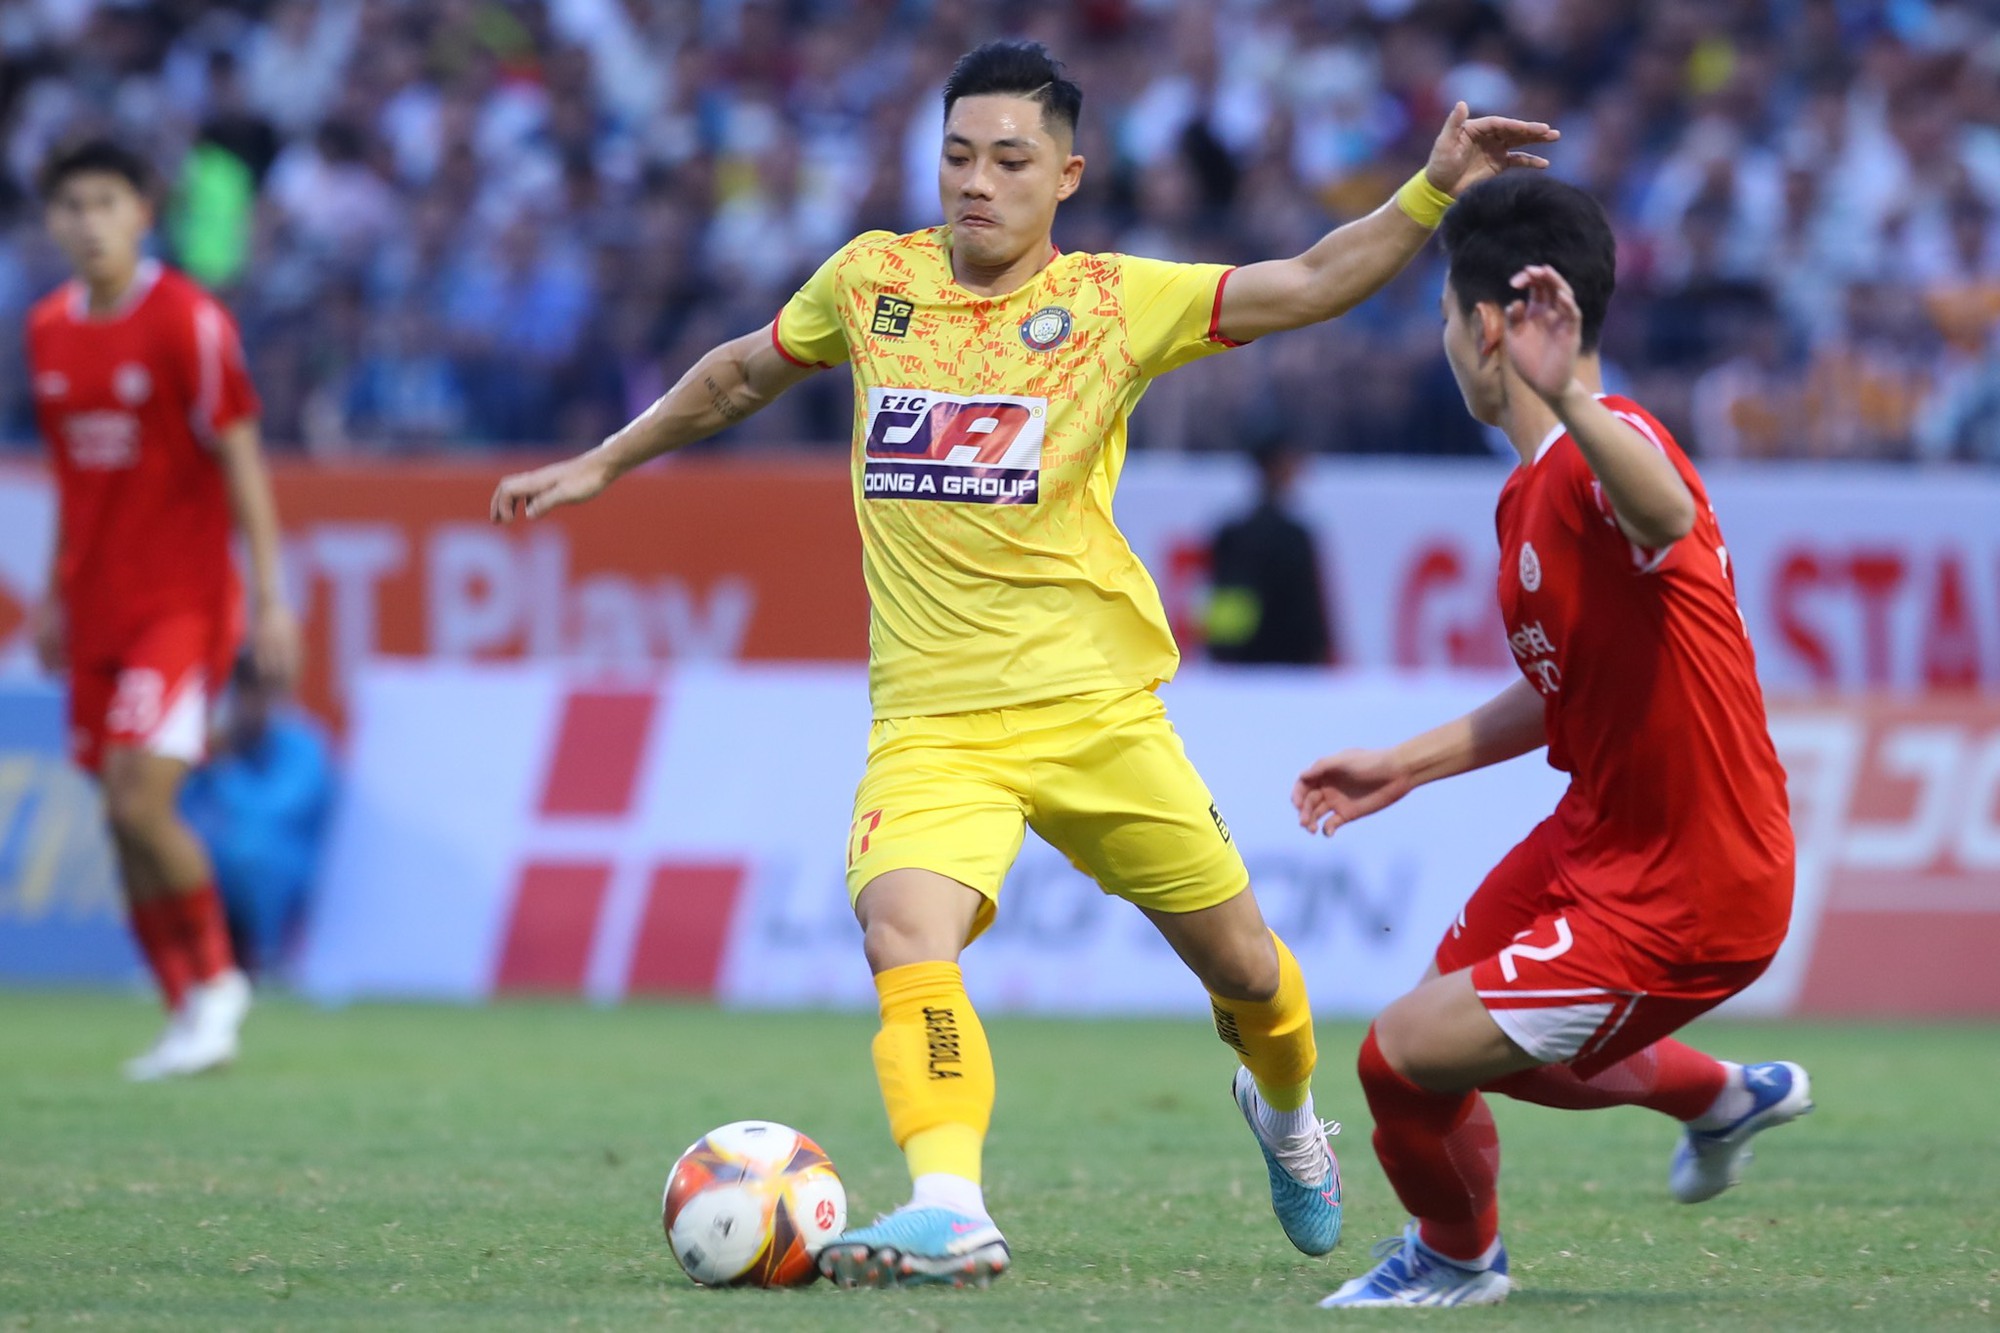 CLB Thanh Hóa vô địch Cúp quốc gia sau loạt đá luân lưu nghẹt thở - Ảnh 1.